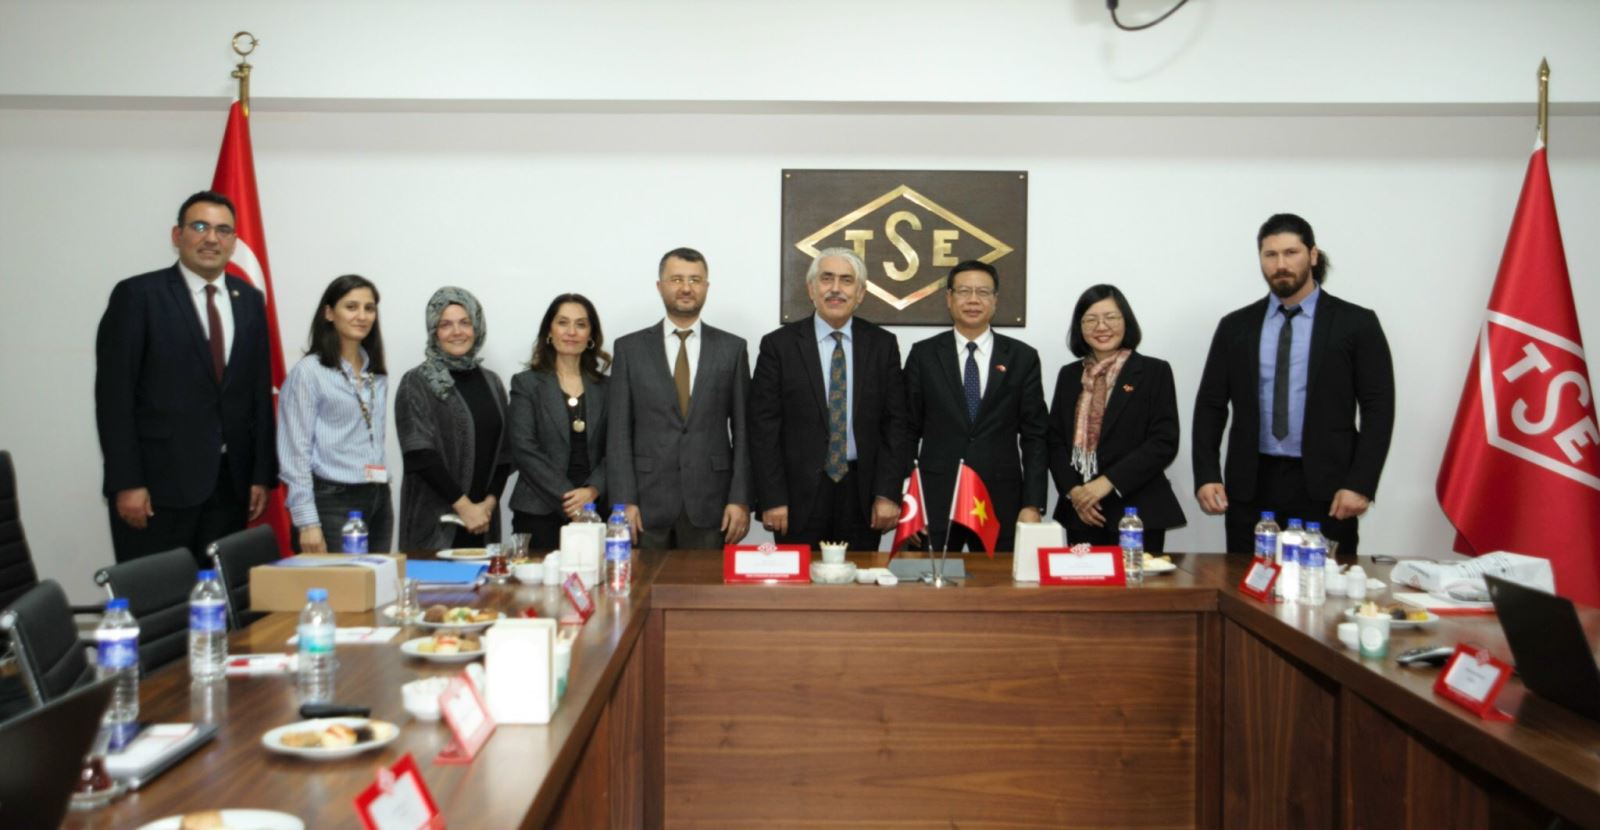 Việt Nam, Thổ Nhĩ Kỳ và UAE – Thúc đẩy hợp tác trong lĩnh vực KH&CN